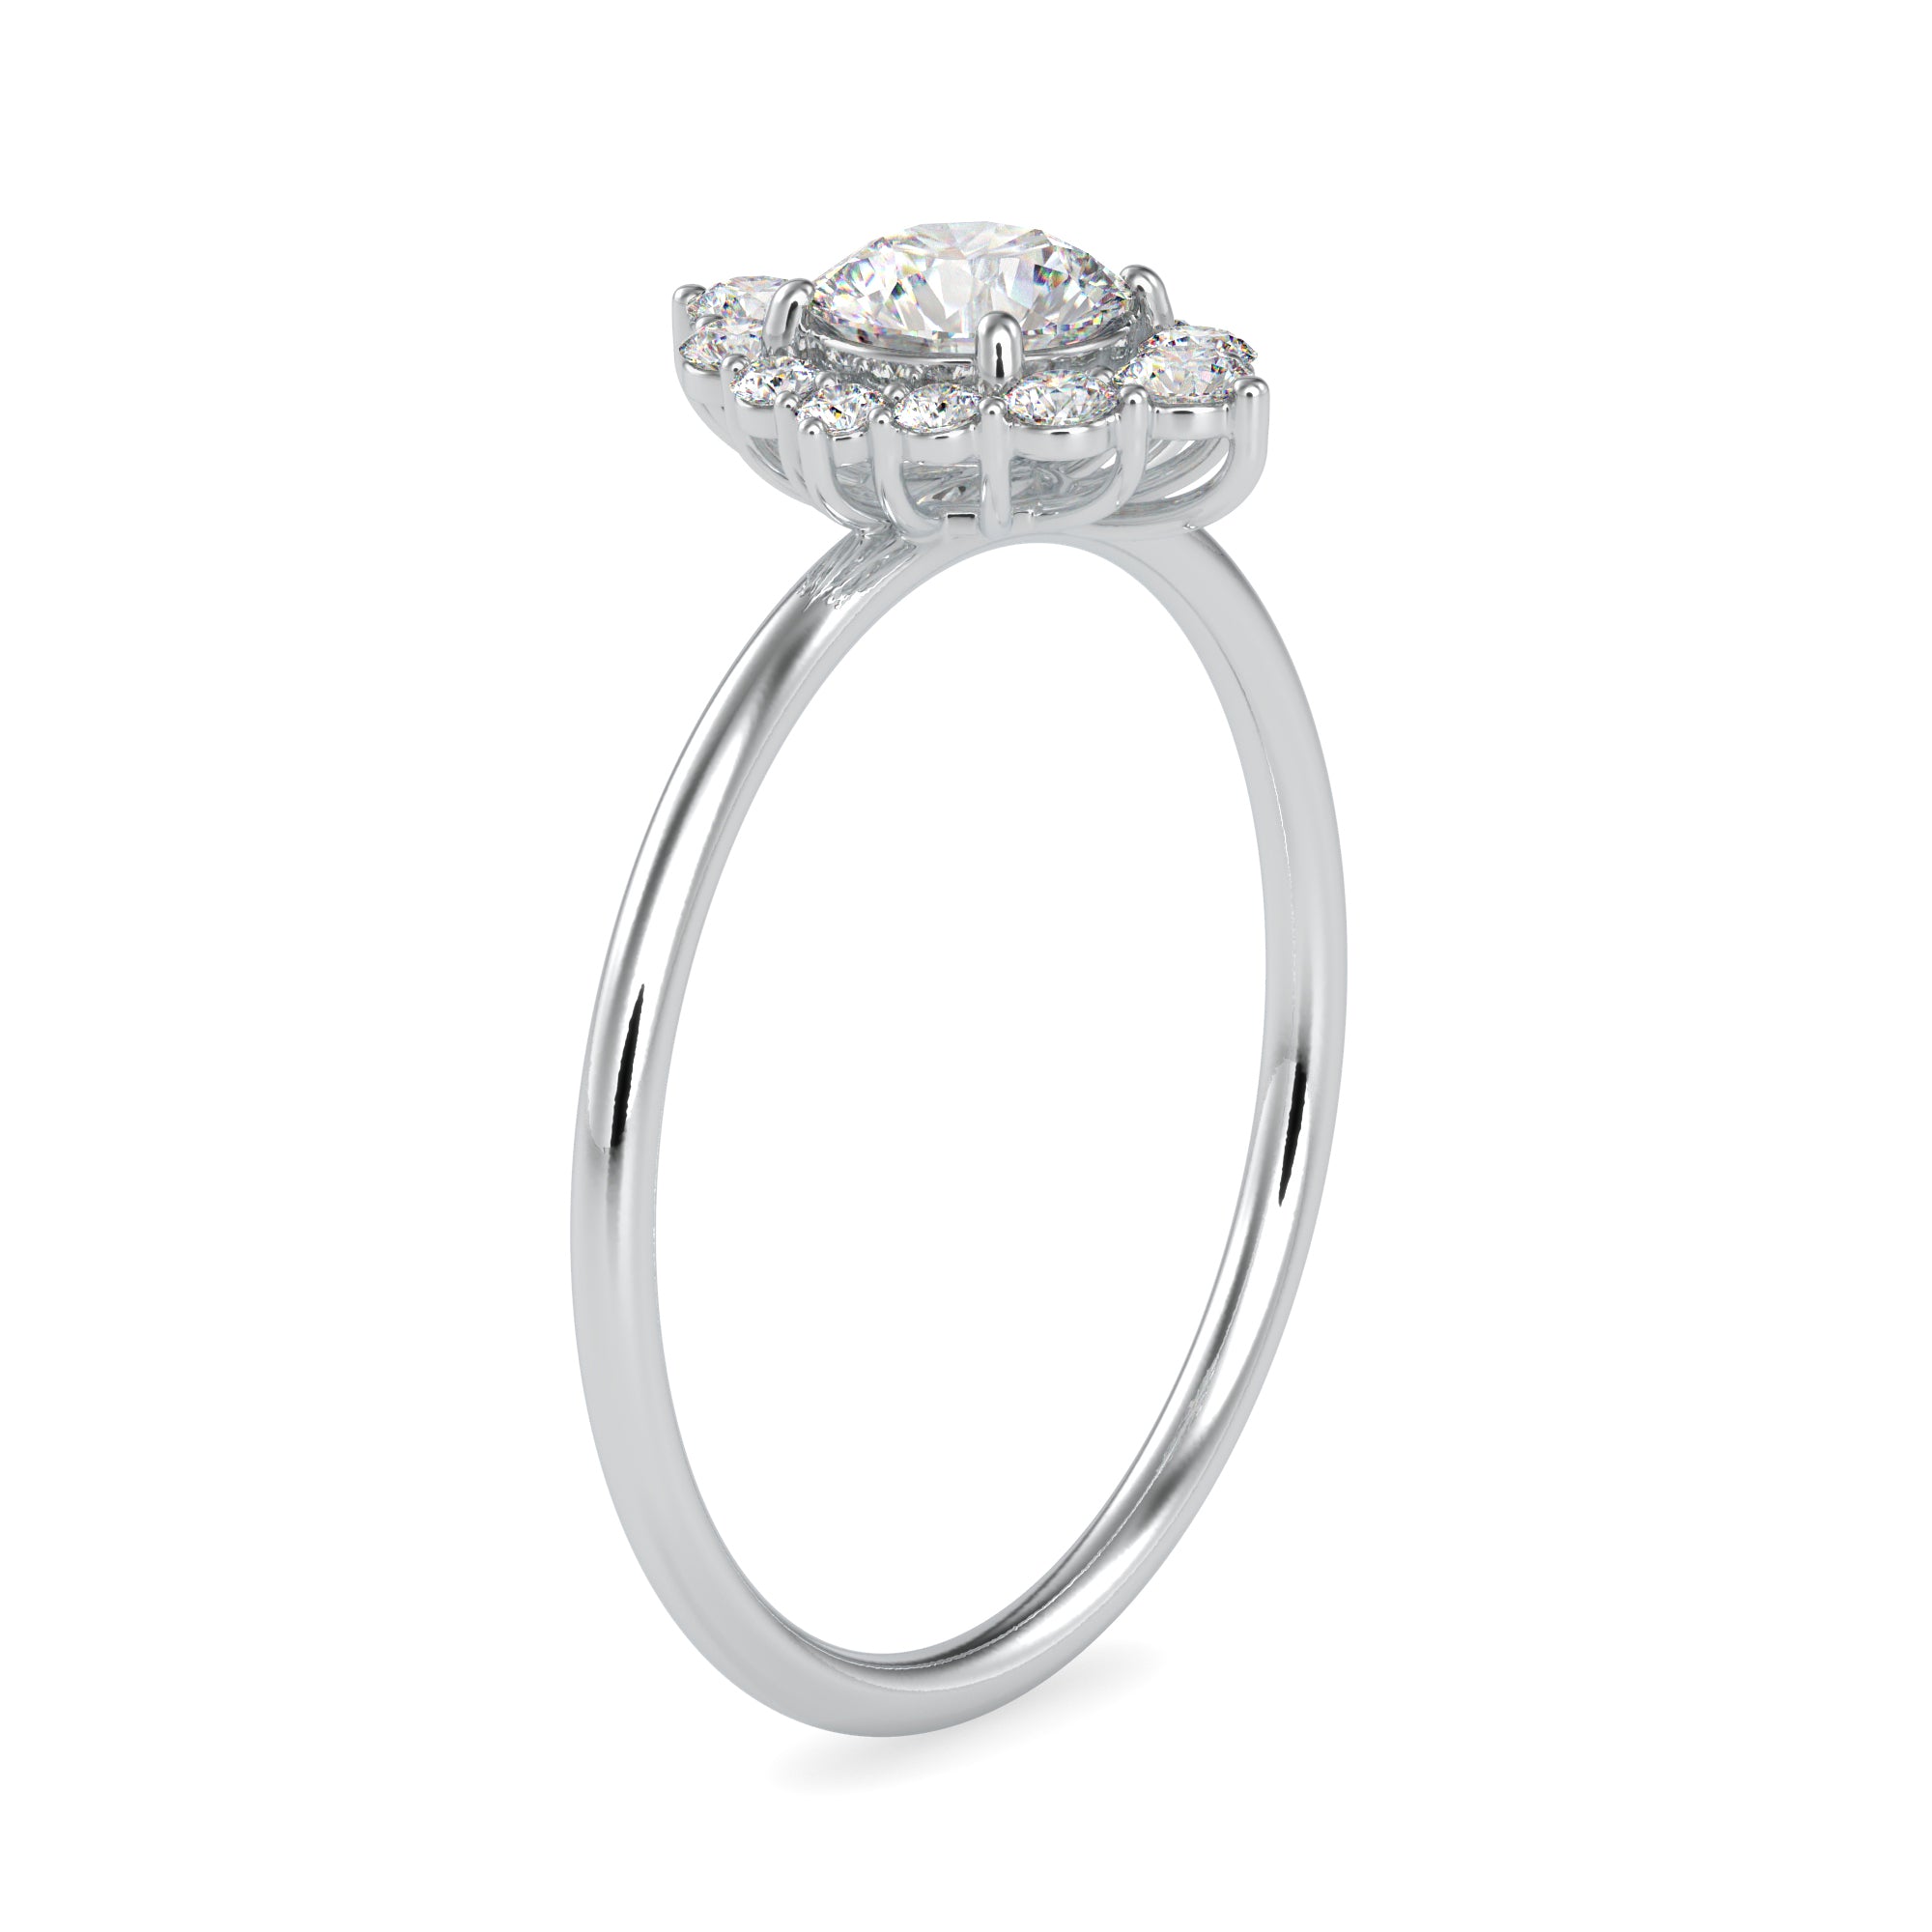 2-Carat Lab Grown Solitaire Platinum Diamond Halo Engagement Ring JL PT LG G 0662-D